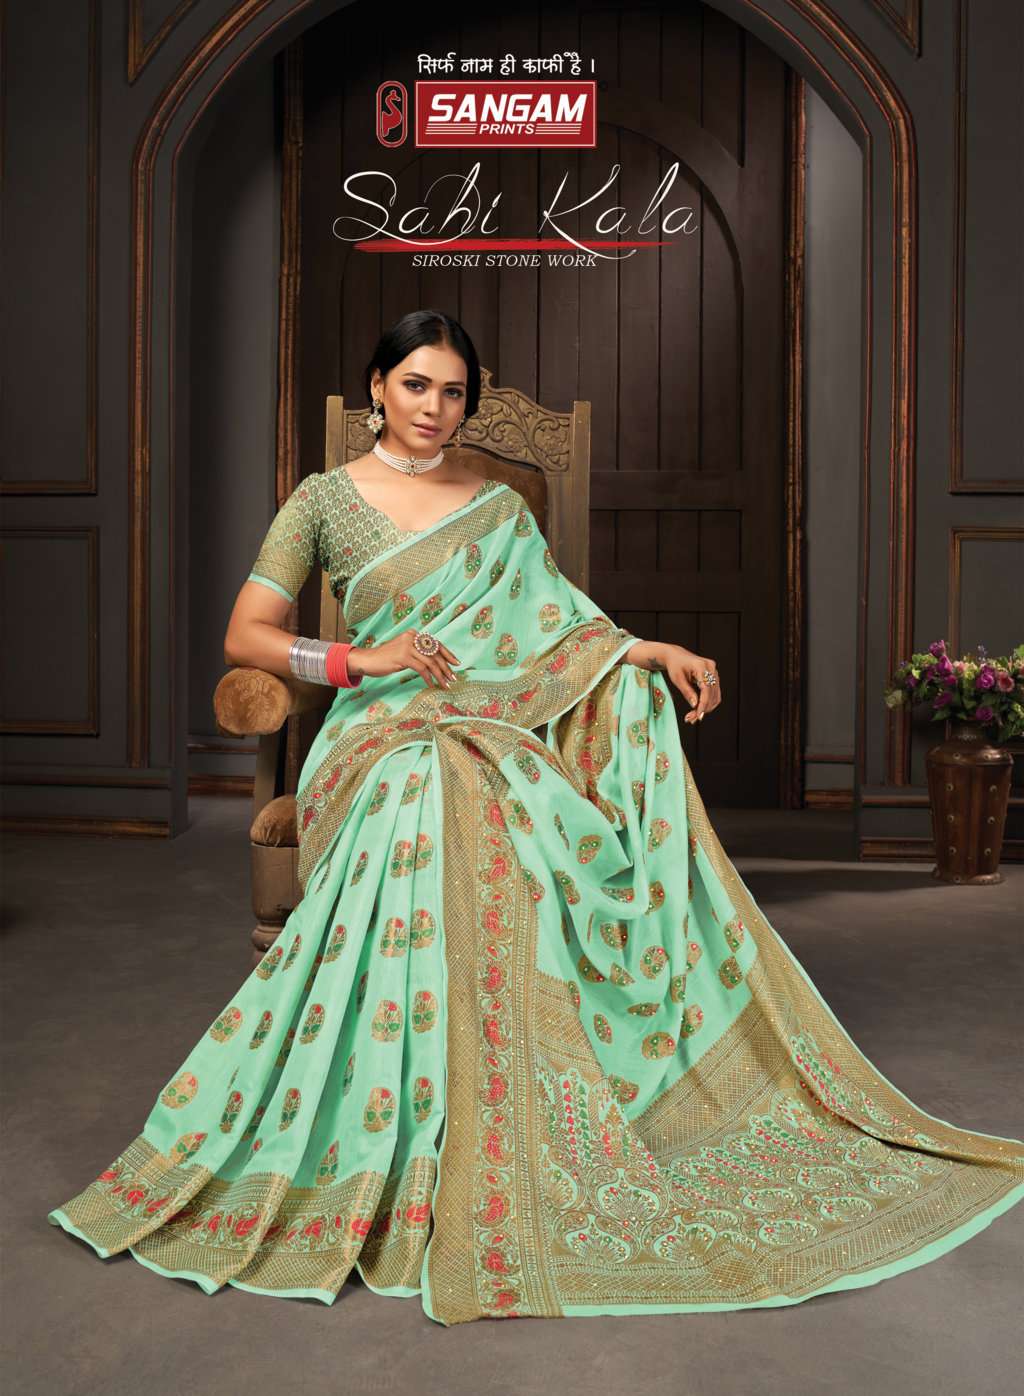 sangam prints sahi kala cotton siroski work saris wholesaler